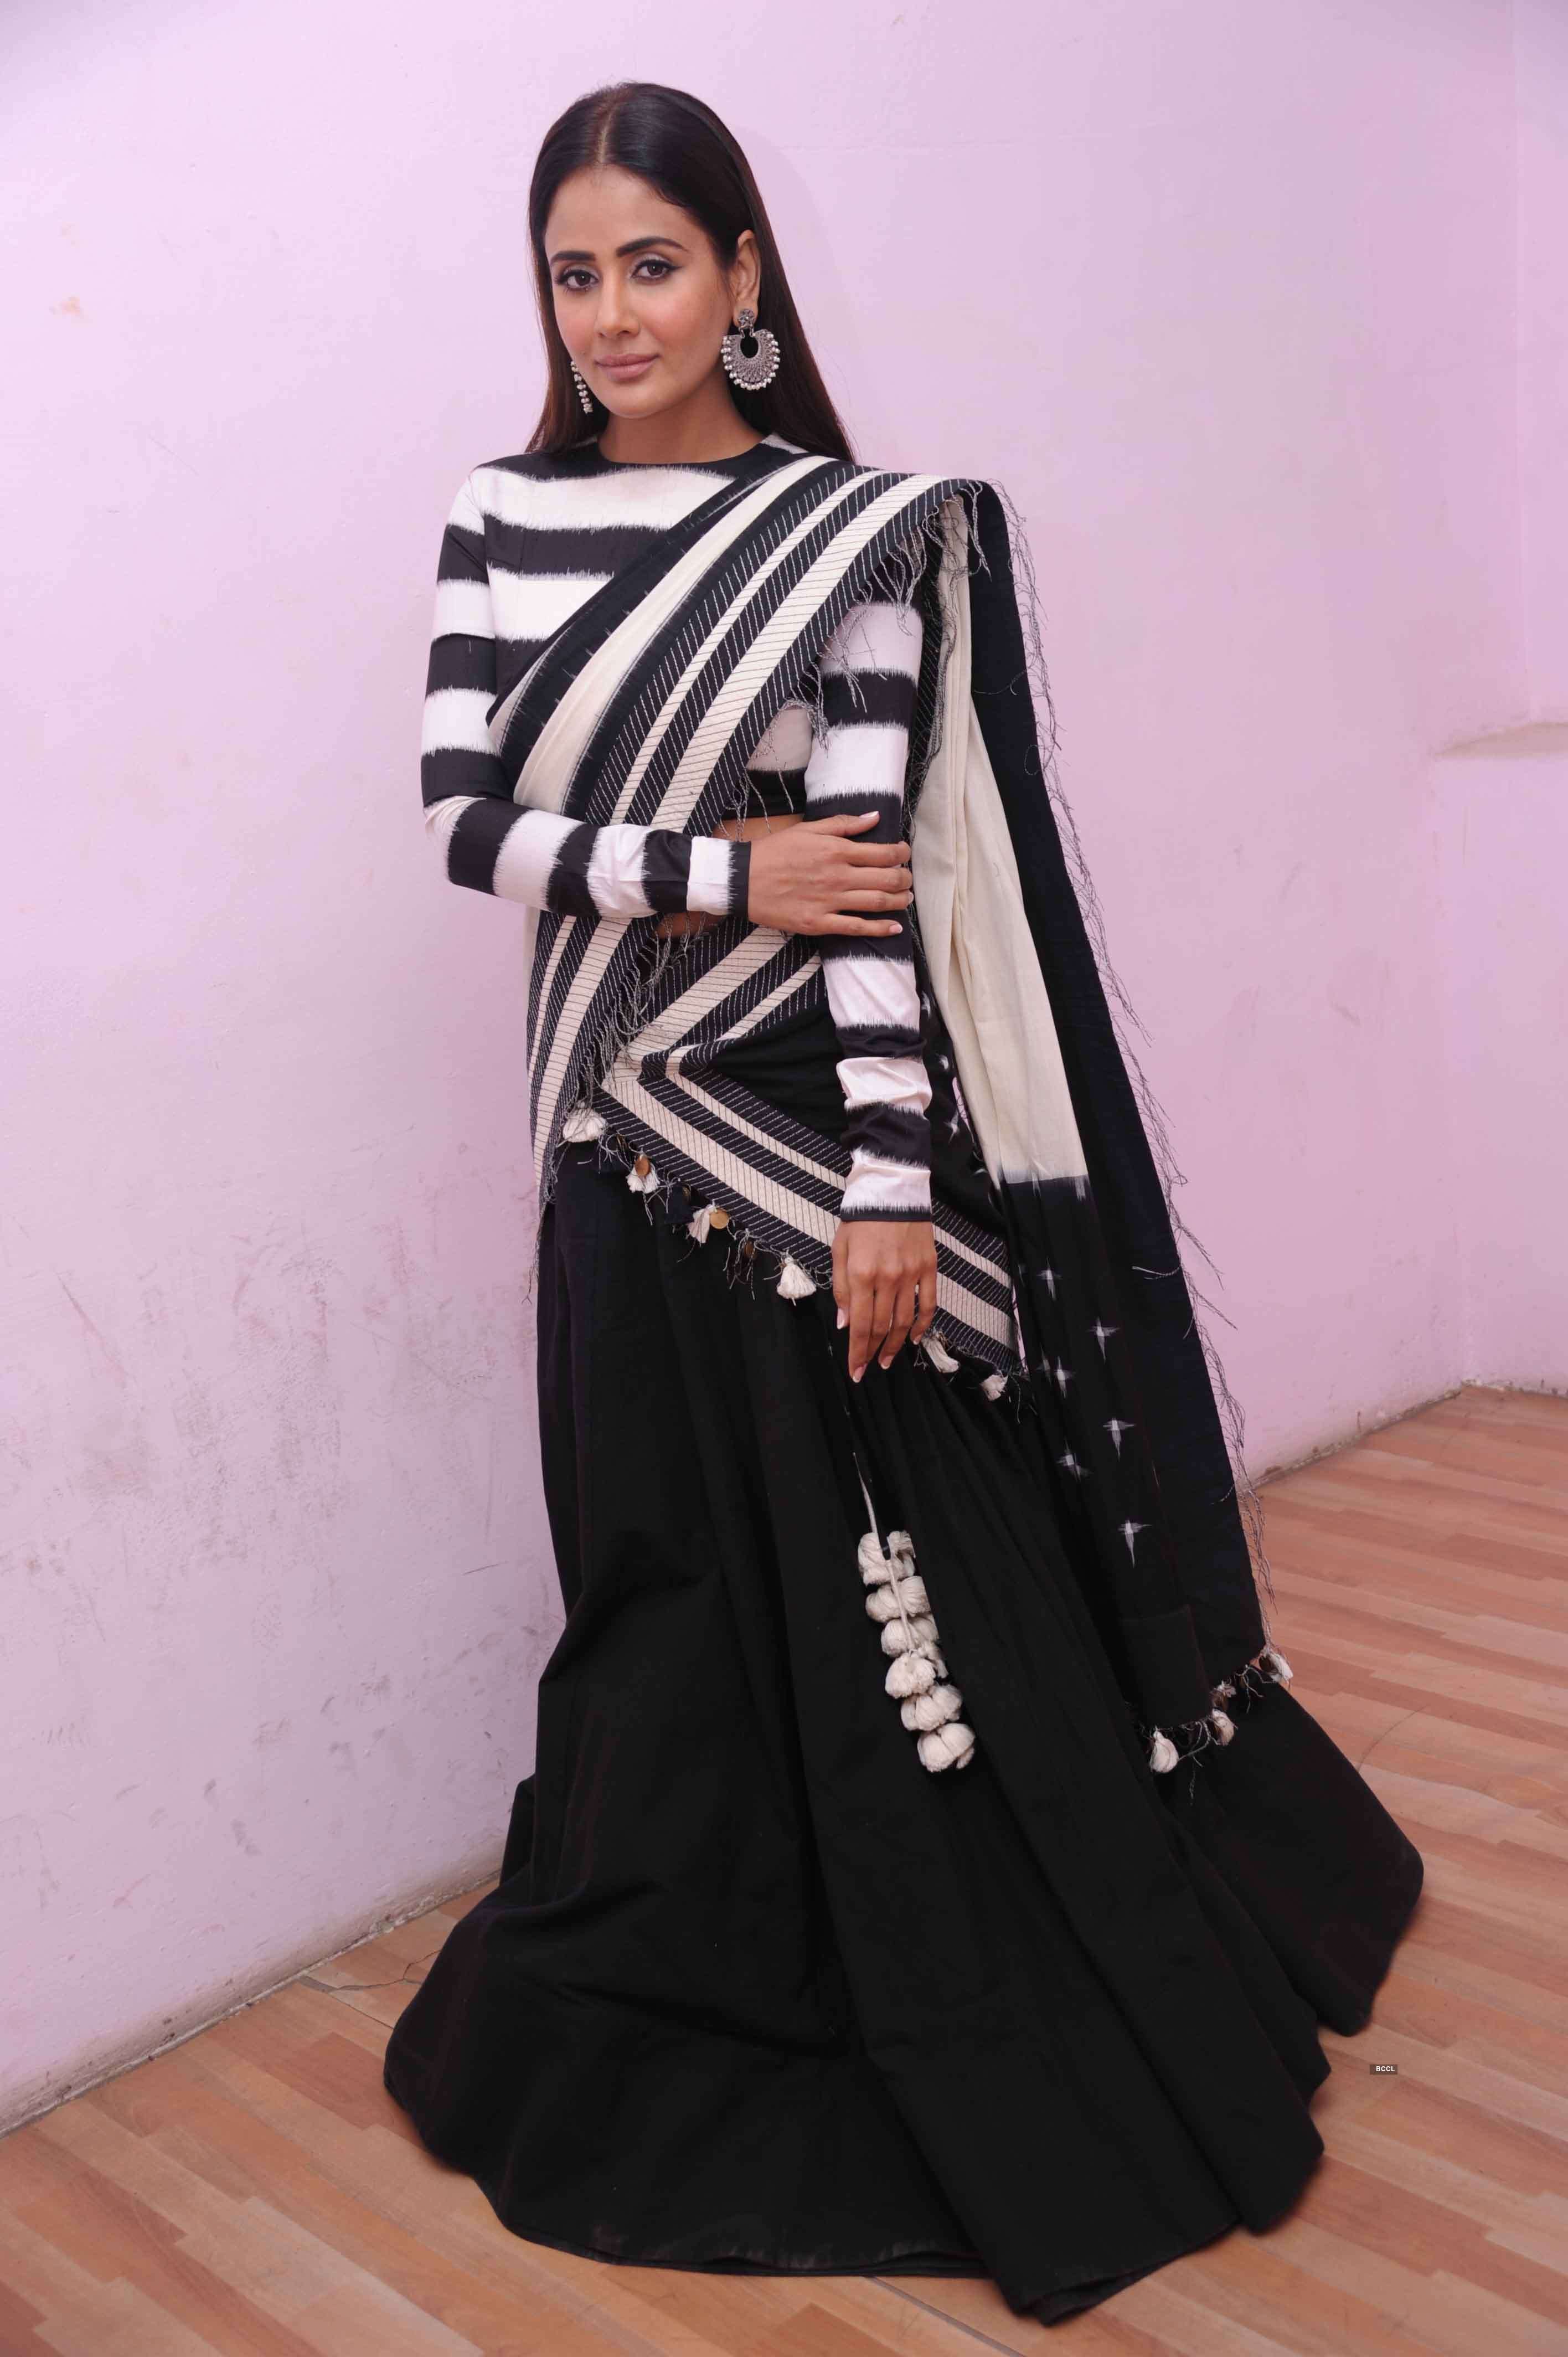 Photos of the gorgeous Kannada actress Parul Yadav